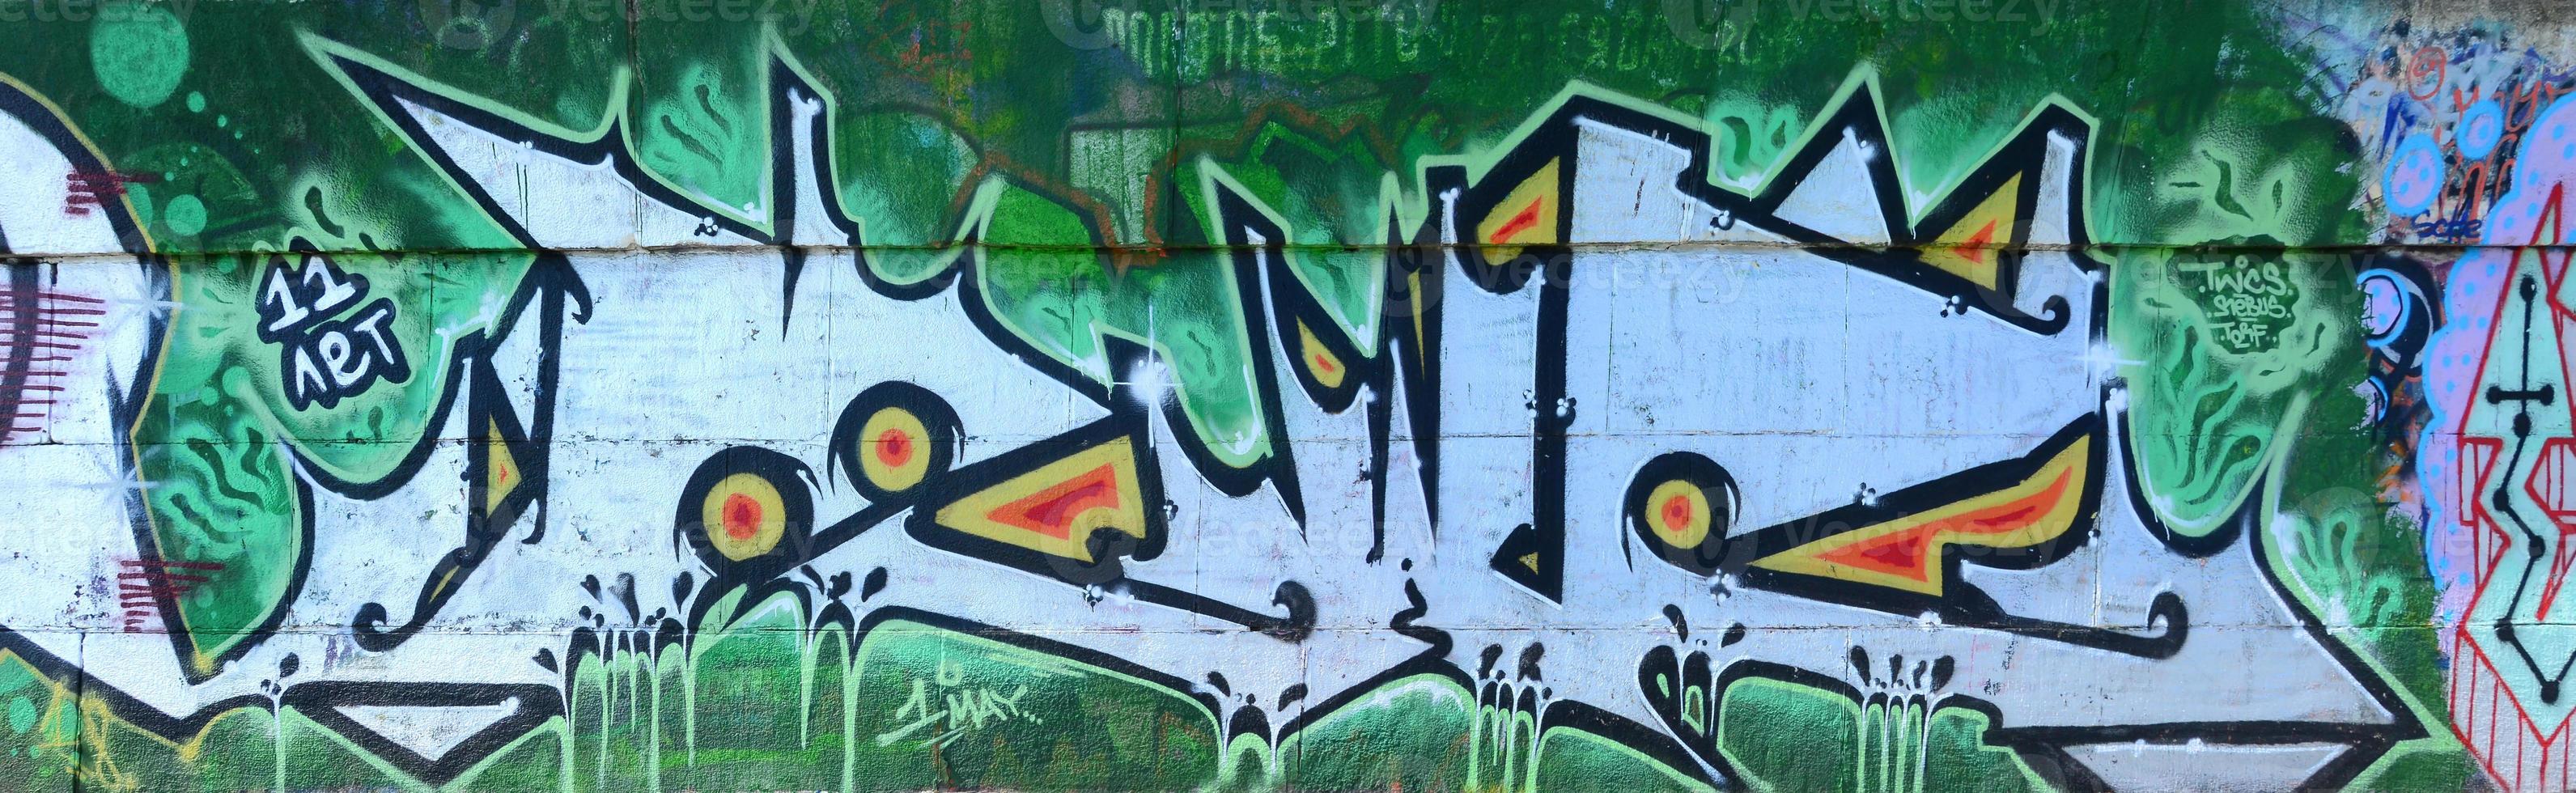 fragmento de dibujos de graffiti. la antigua muralla decorada con manchas de pintura al estilo de la cultura del arte callejero. textura de fondo coloreada en tonos verdes foto